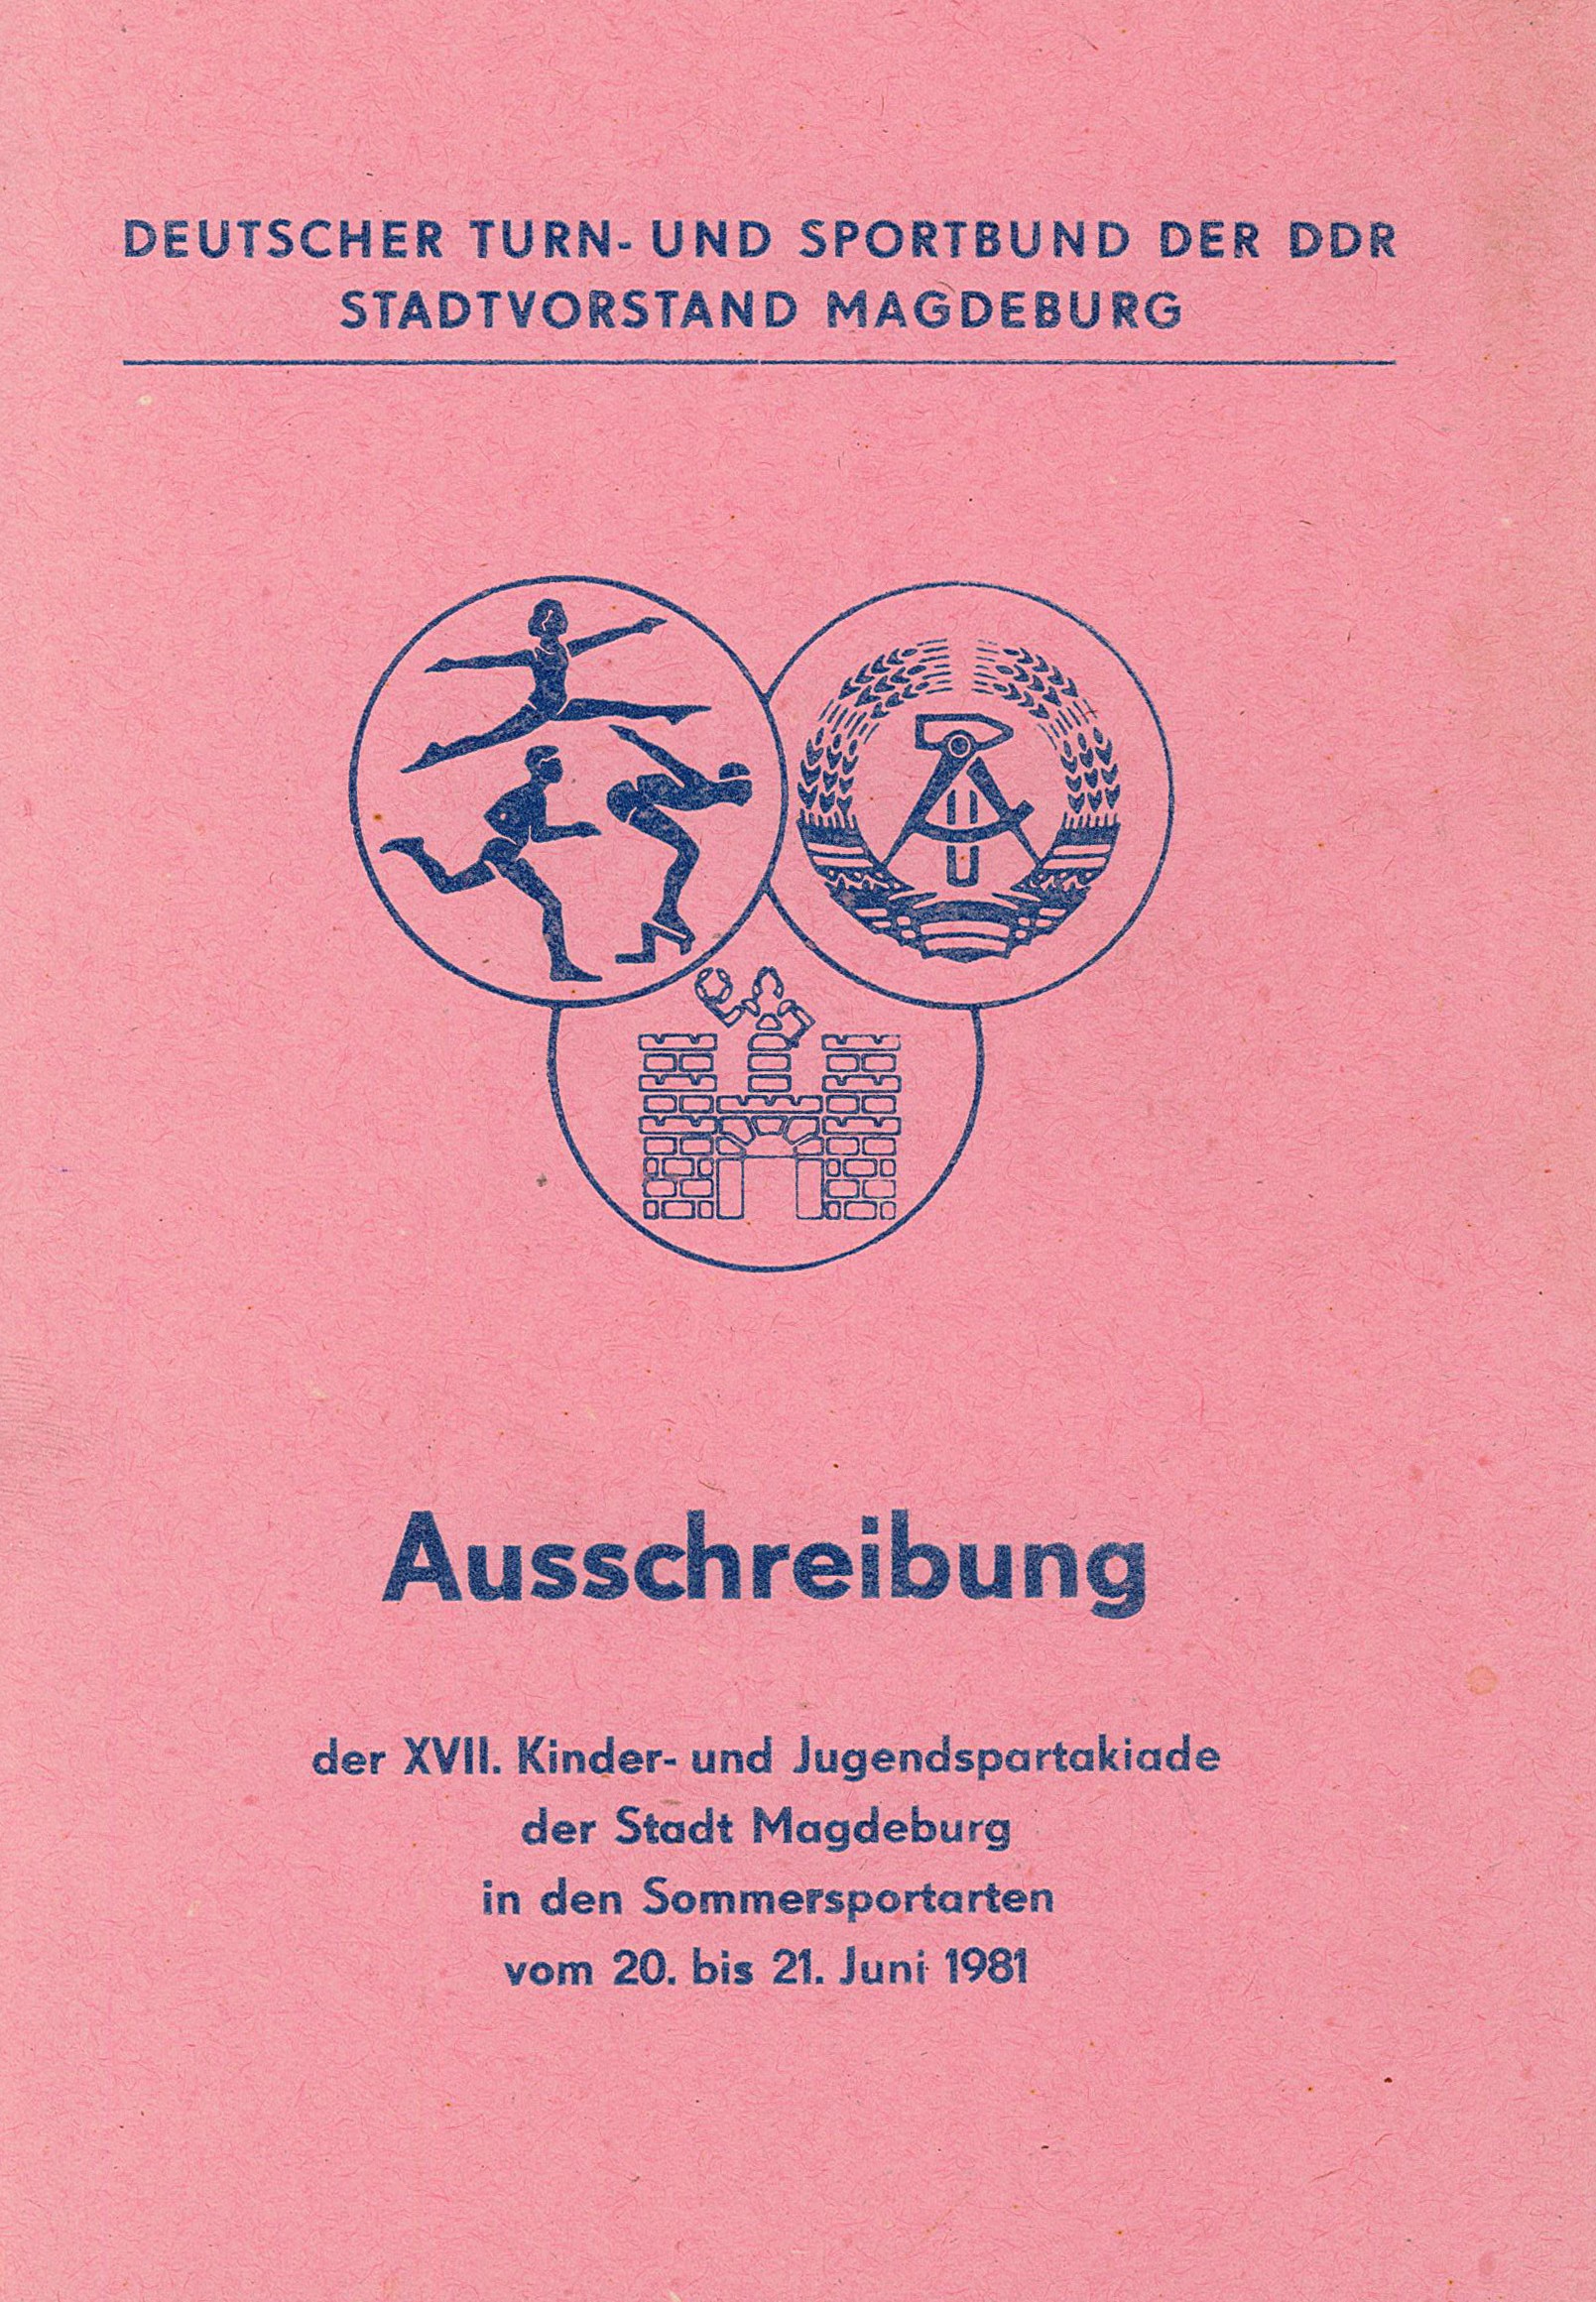 Ausschreibung der XVII. Kinder- und Jugendspartakiade Magdeburg, 1981 (Museum Wolmirstedt RR-F)